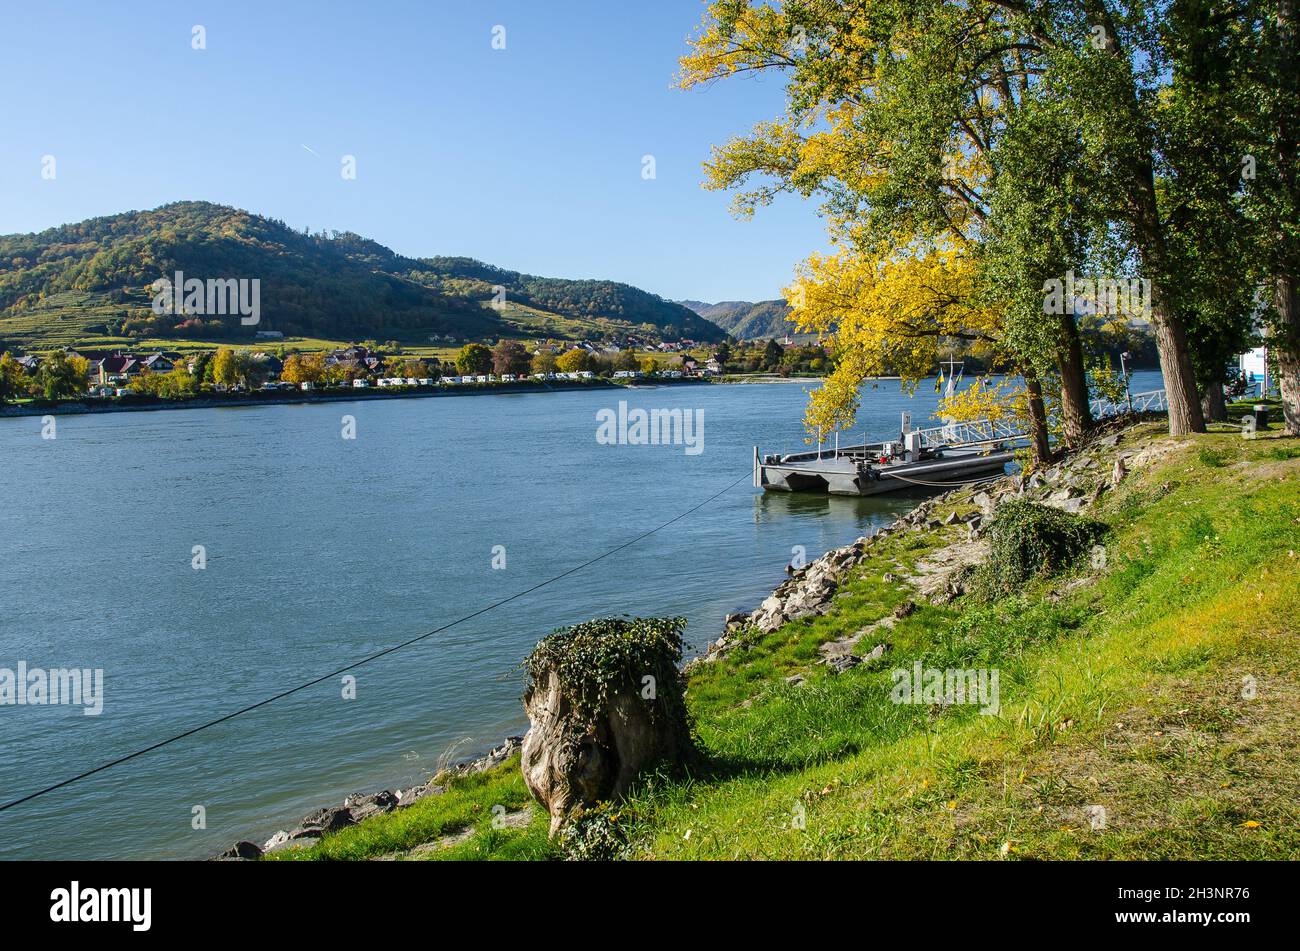 Dürnstein, una piccola cittadina sul Danubio nel distretto di Krems-Land, è una delle destinazioni turistiche più visitate della regione di Wachau. Foto Stock